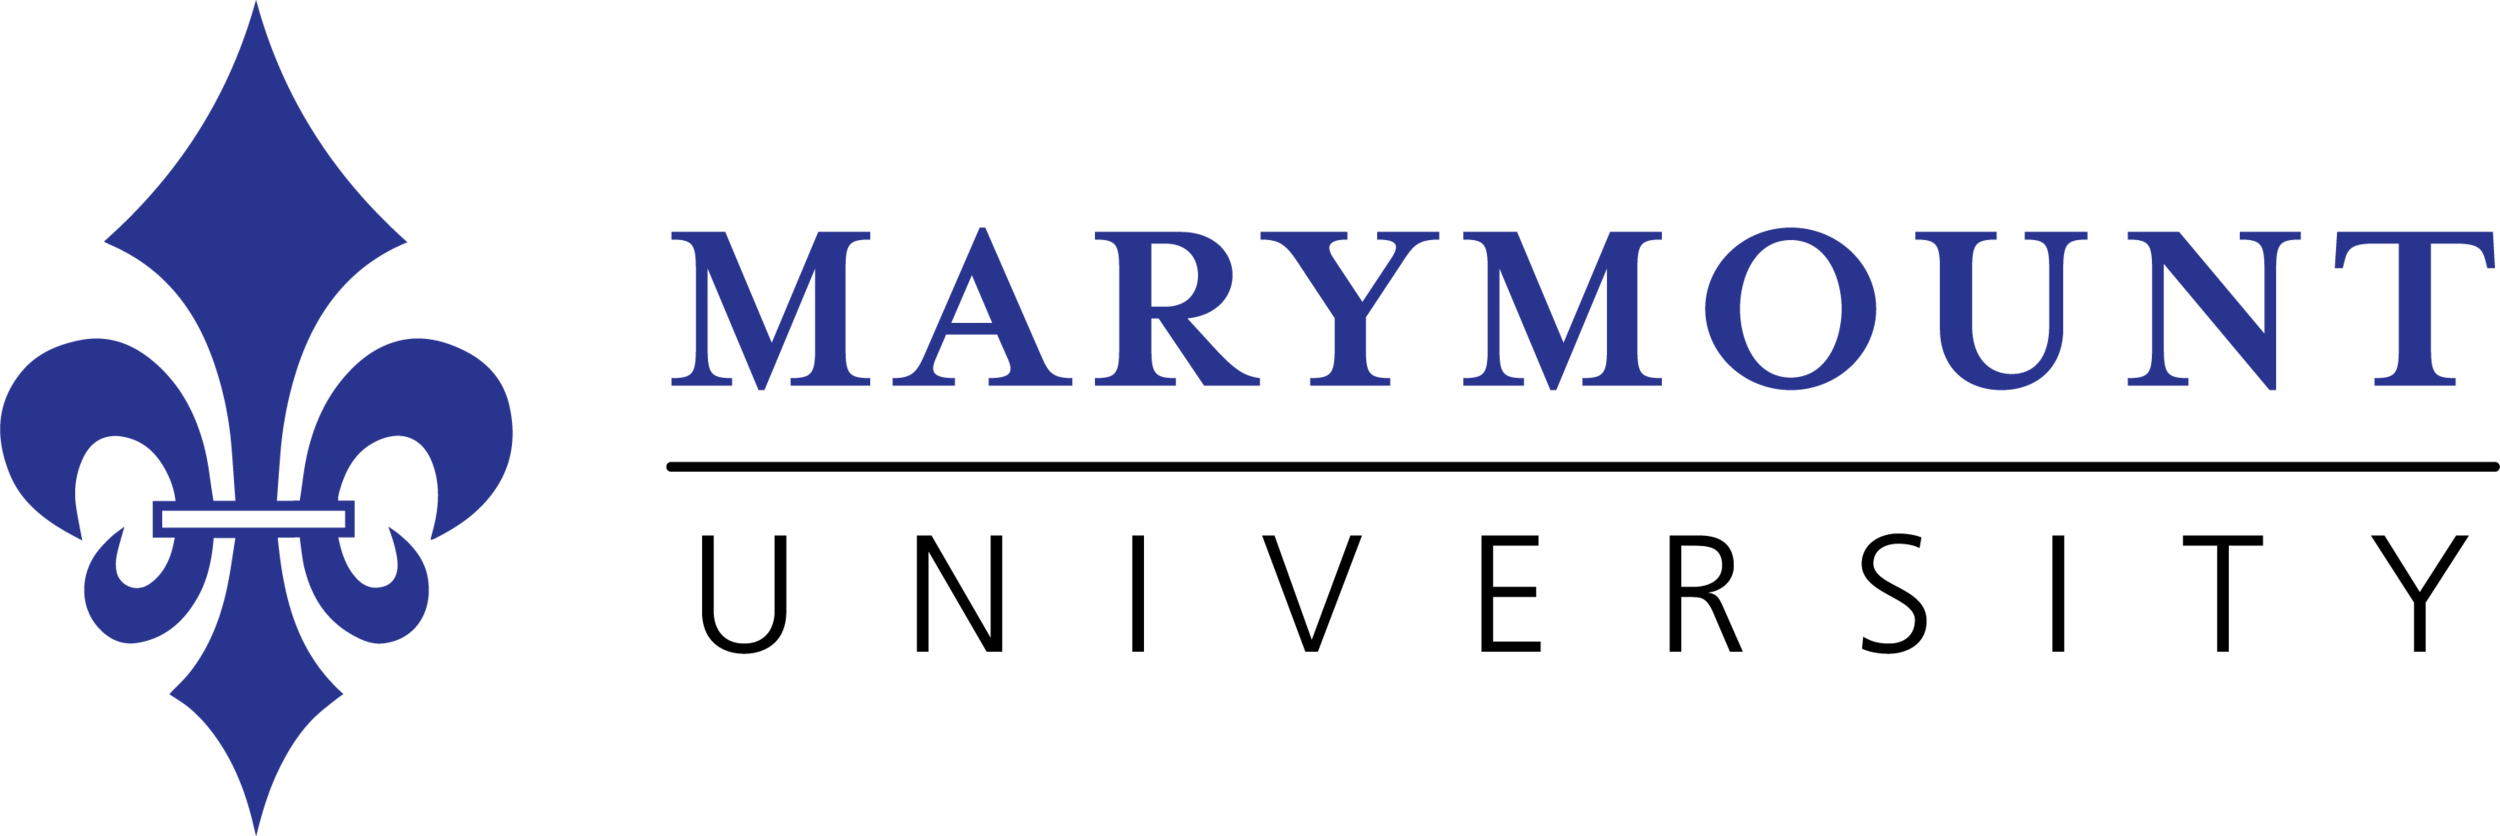 Universidad de Marymount logo